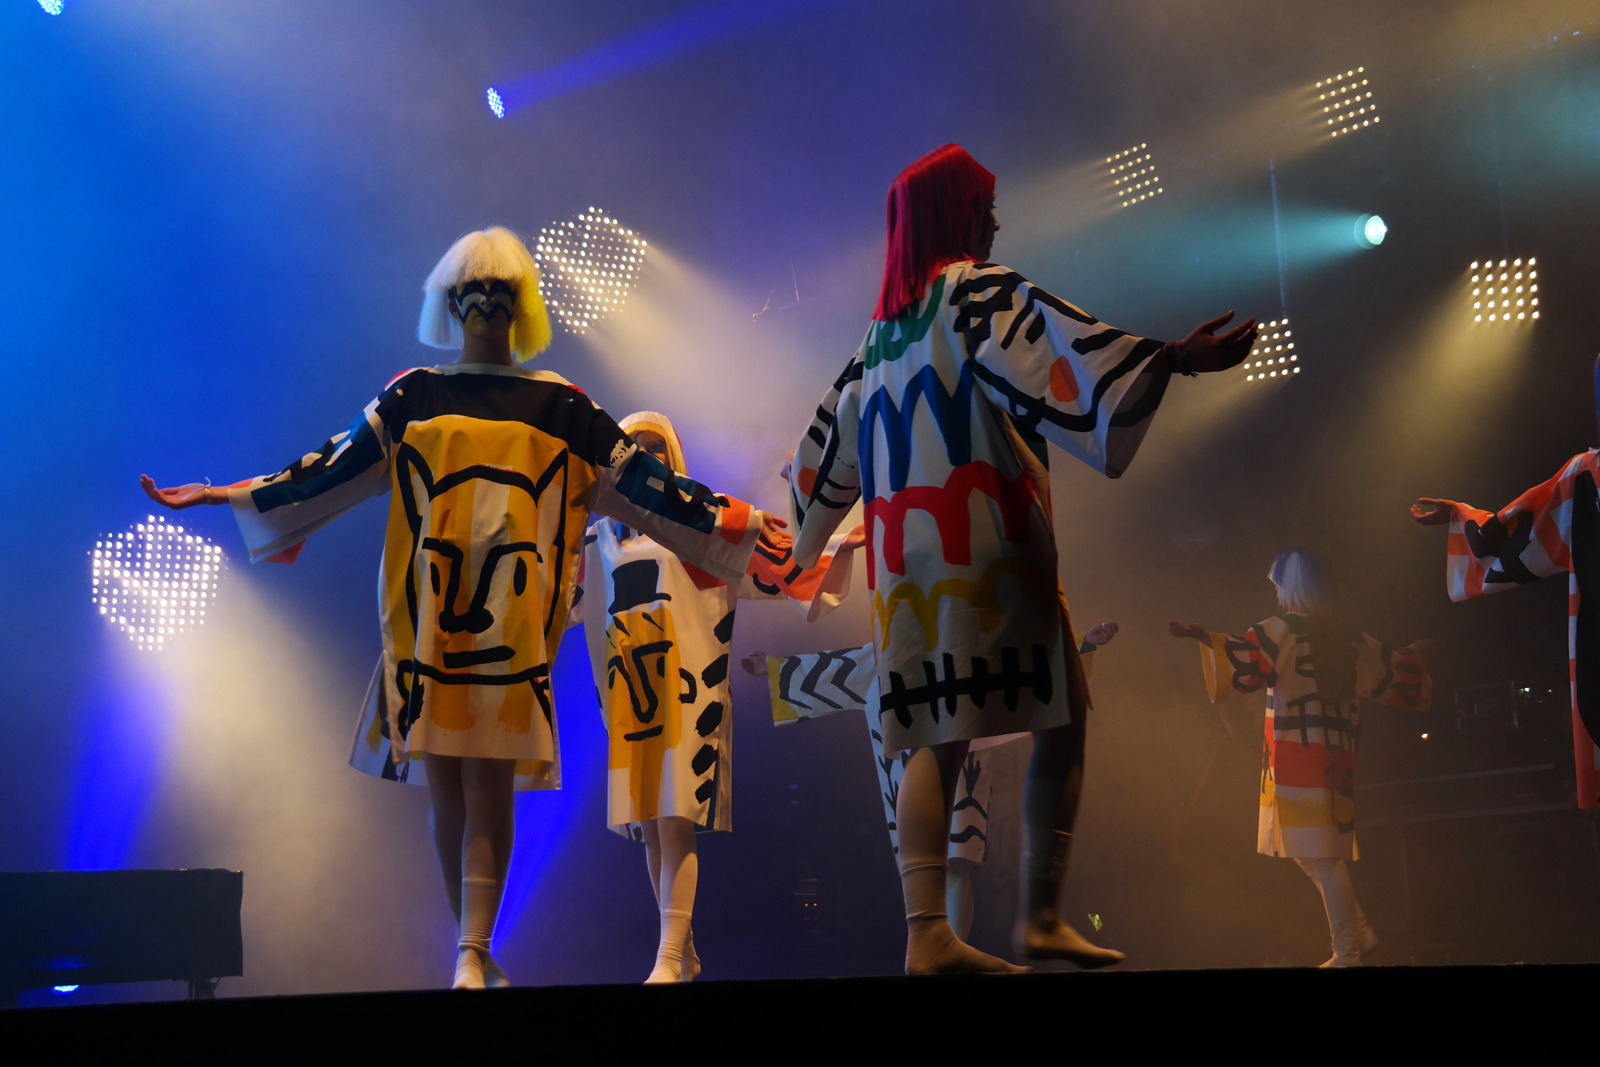 Jean-Charles-de-Castelbajac-JCDC-spectacle-Fantomes-avec-Mr-No-création-musique-mode-Art-Rock-2015-festival-Saint-Brieuc-photo-scène-united-states-of-paris-blog